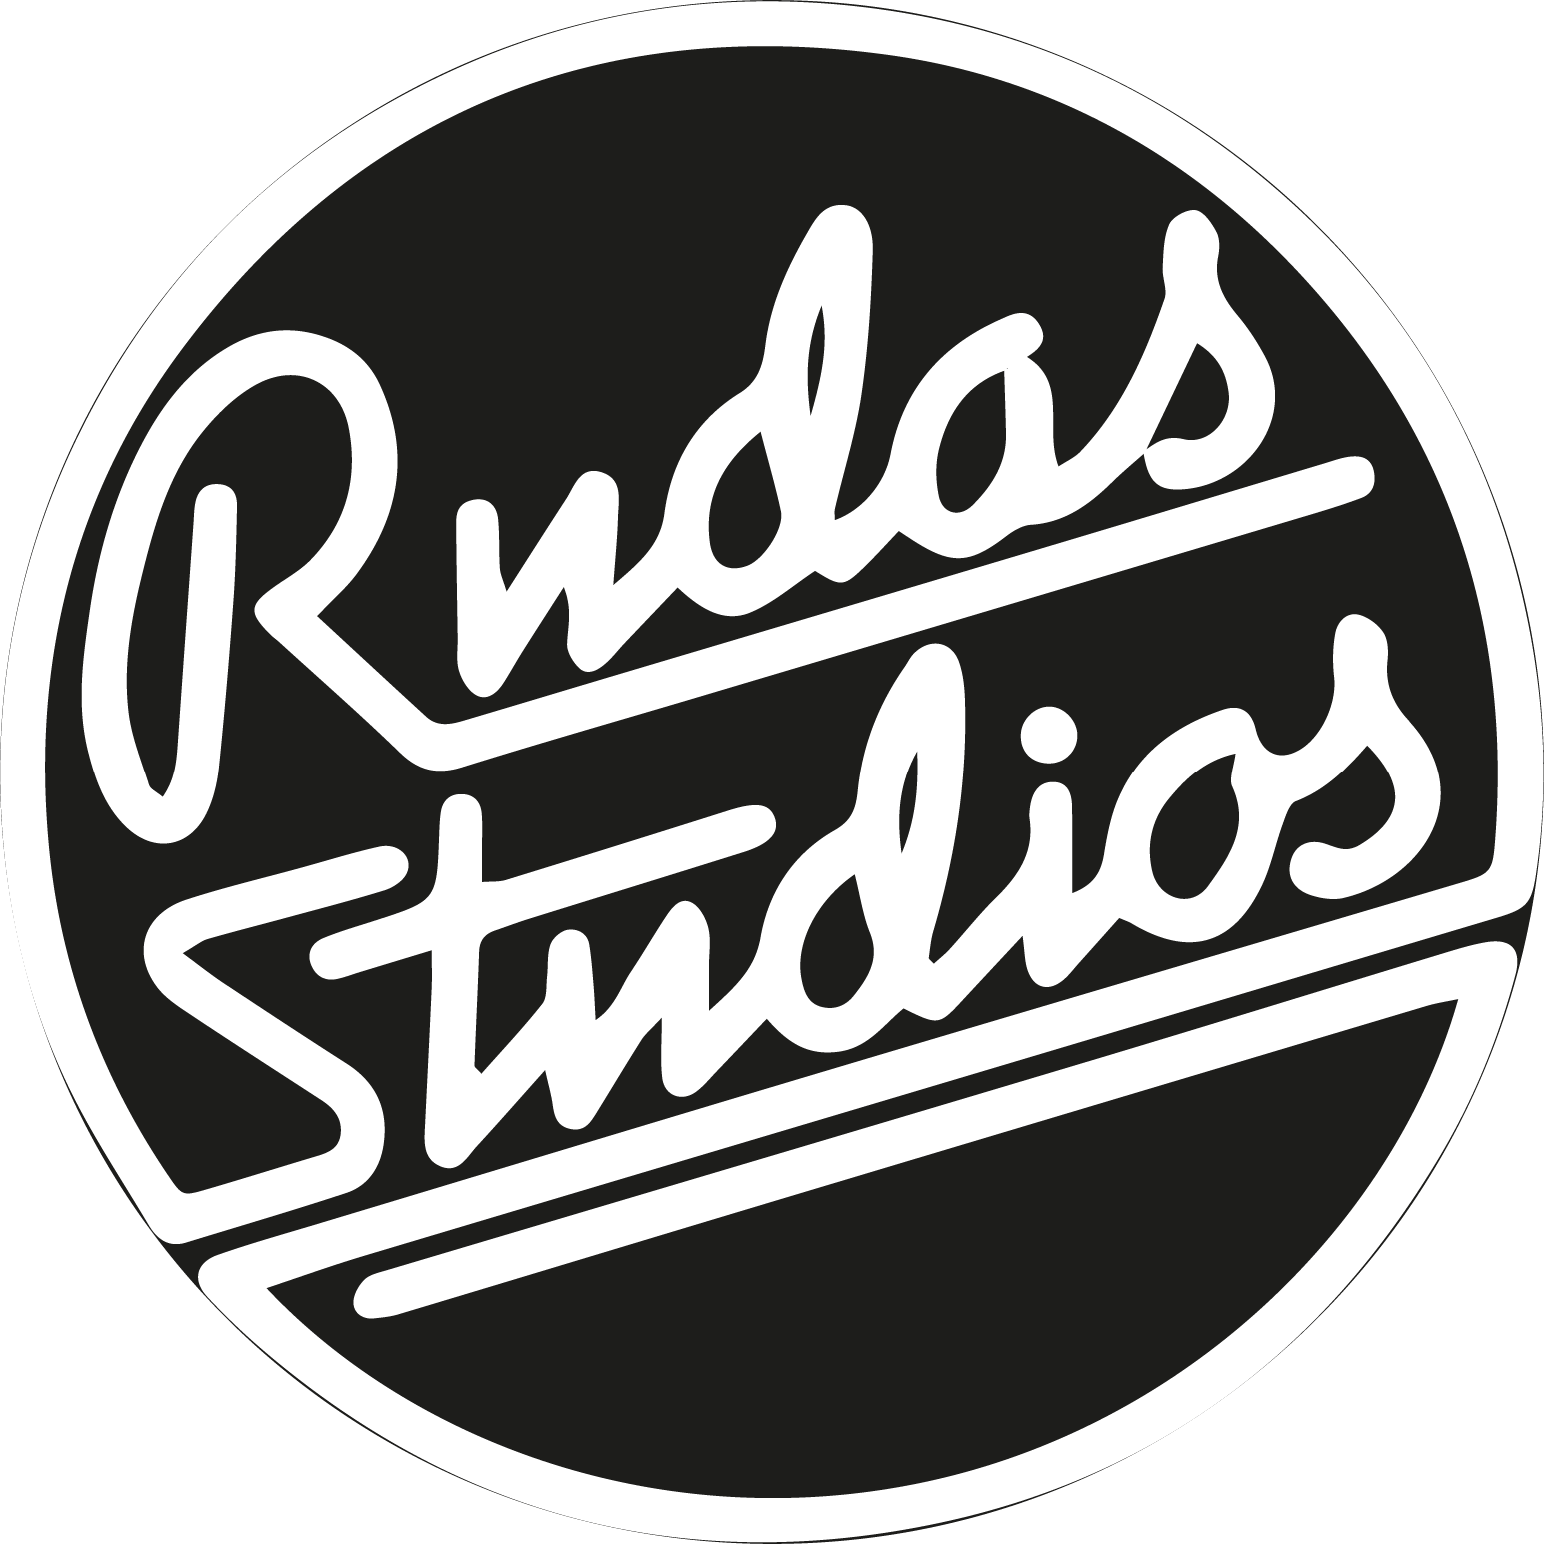 Rudas Studios